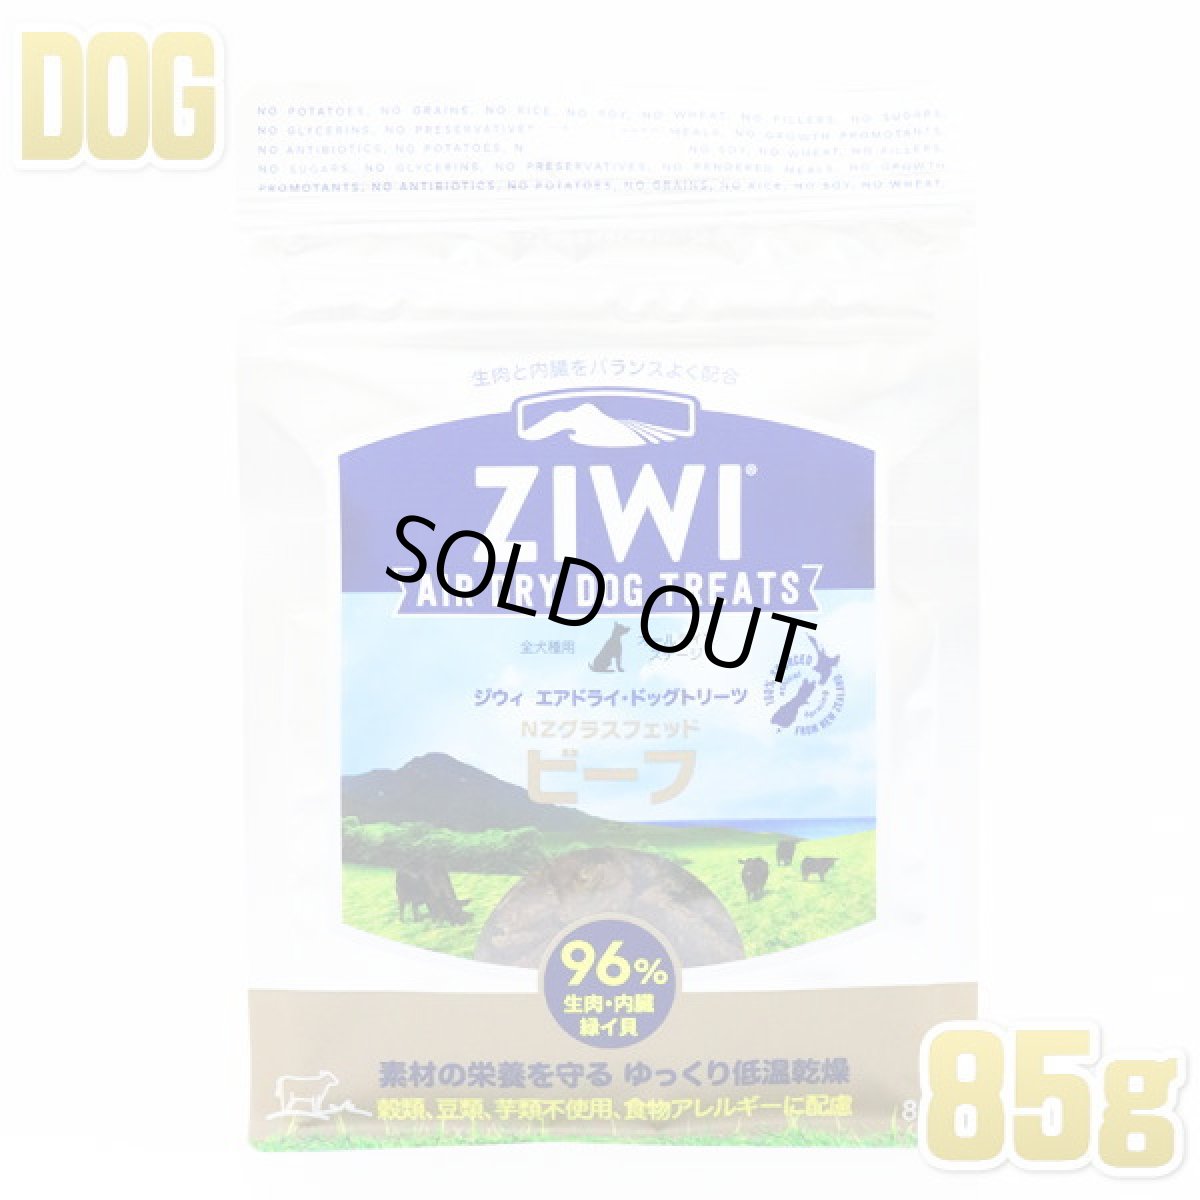 画像1: 最短賞味2024.5・ジウィピーク 犬 ドッグトリーツ NZグラスフィッド ビーフ 85g 総合栄養食ドッグフードZiwiPeak正規品zi94702 (1)